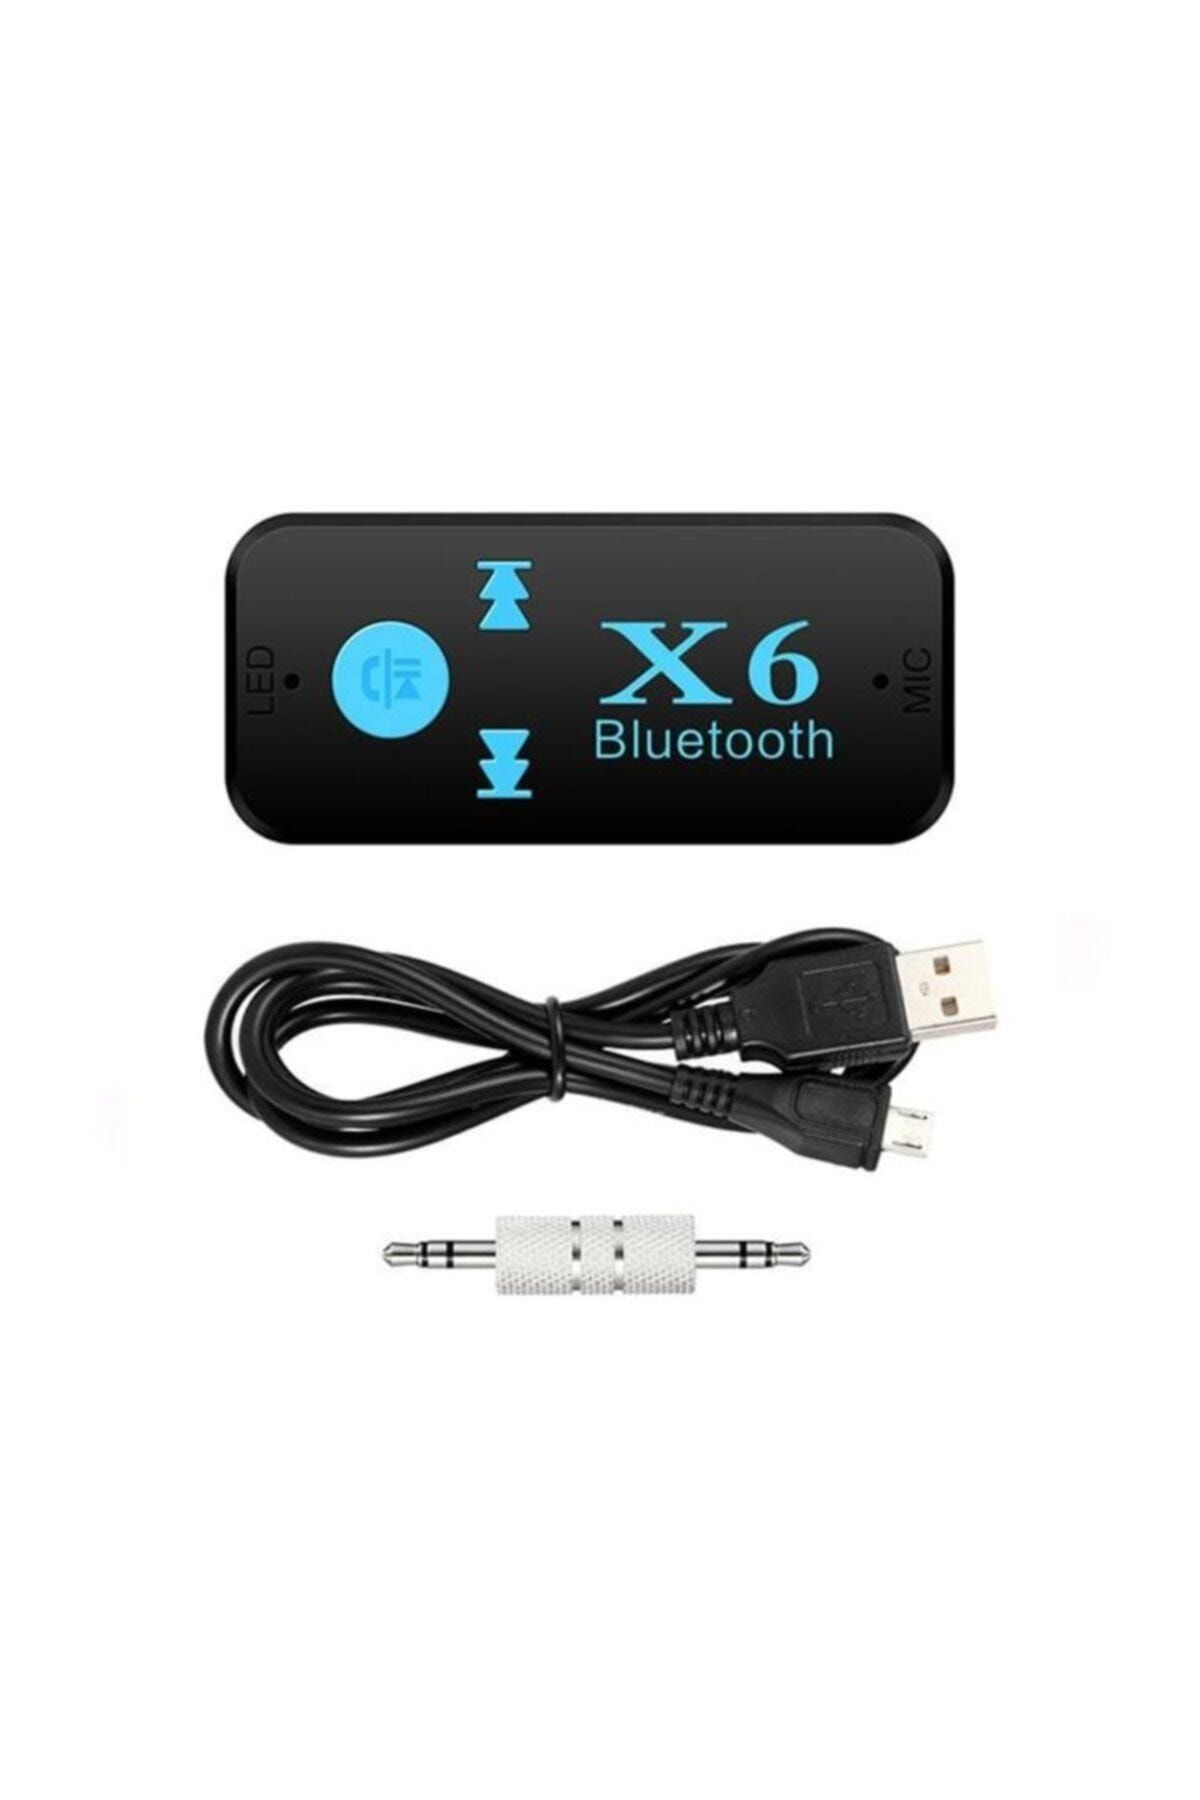 Gomax X6 Hafıza Kart Girişli Bluetooth Aux Araç Kiti 3in1